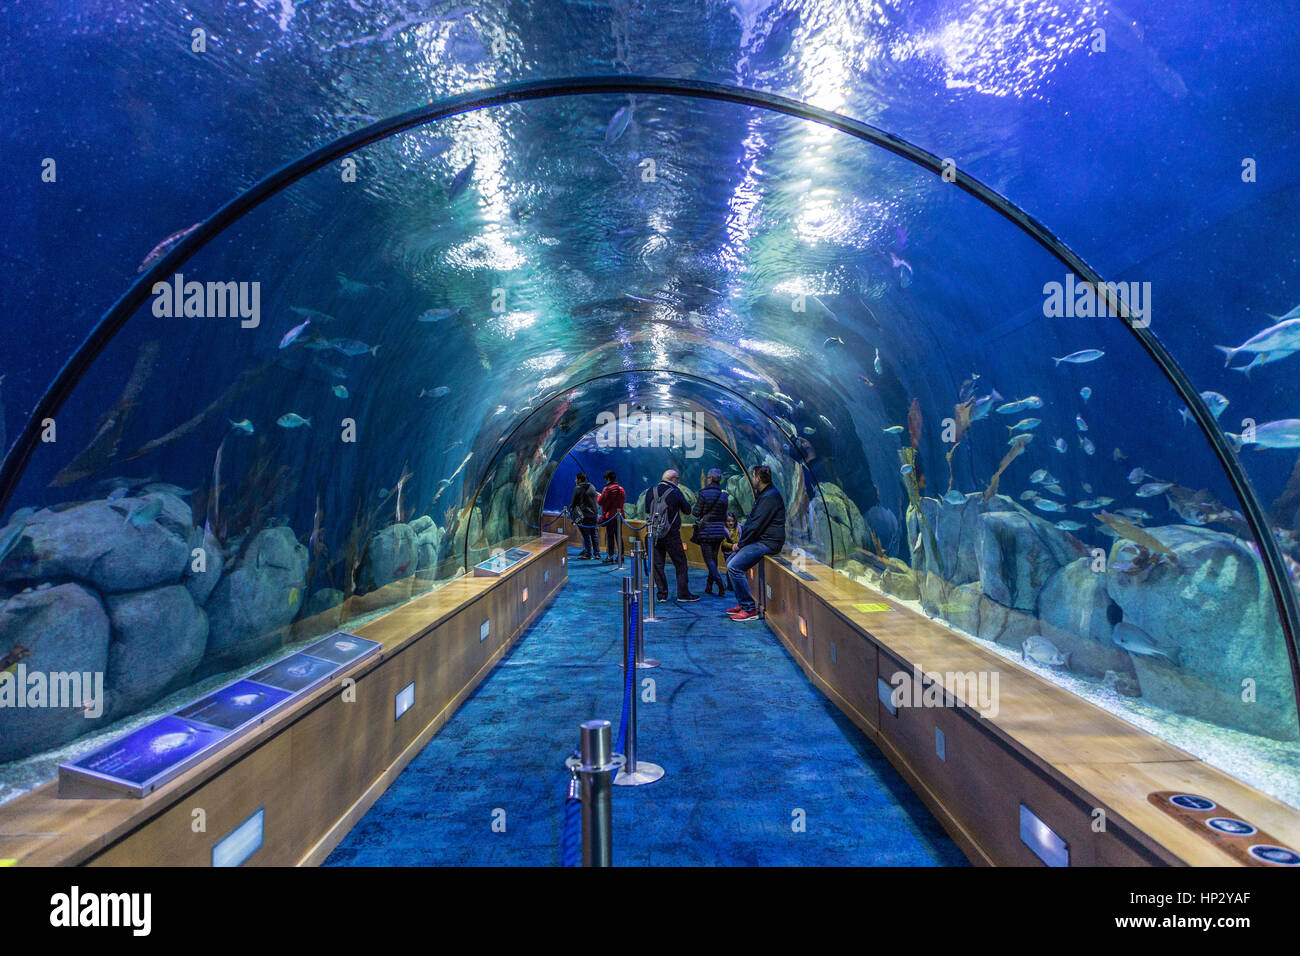 Inside Aquarium of the L'Oceanografic, Valencia Ciudad de las Artes y las Ciencias Stock Photo